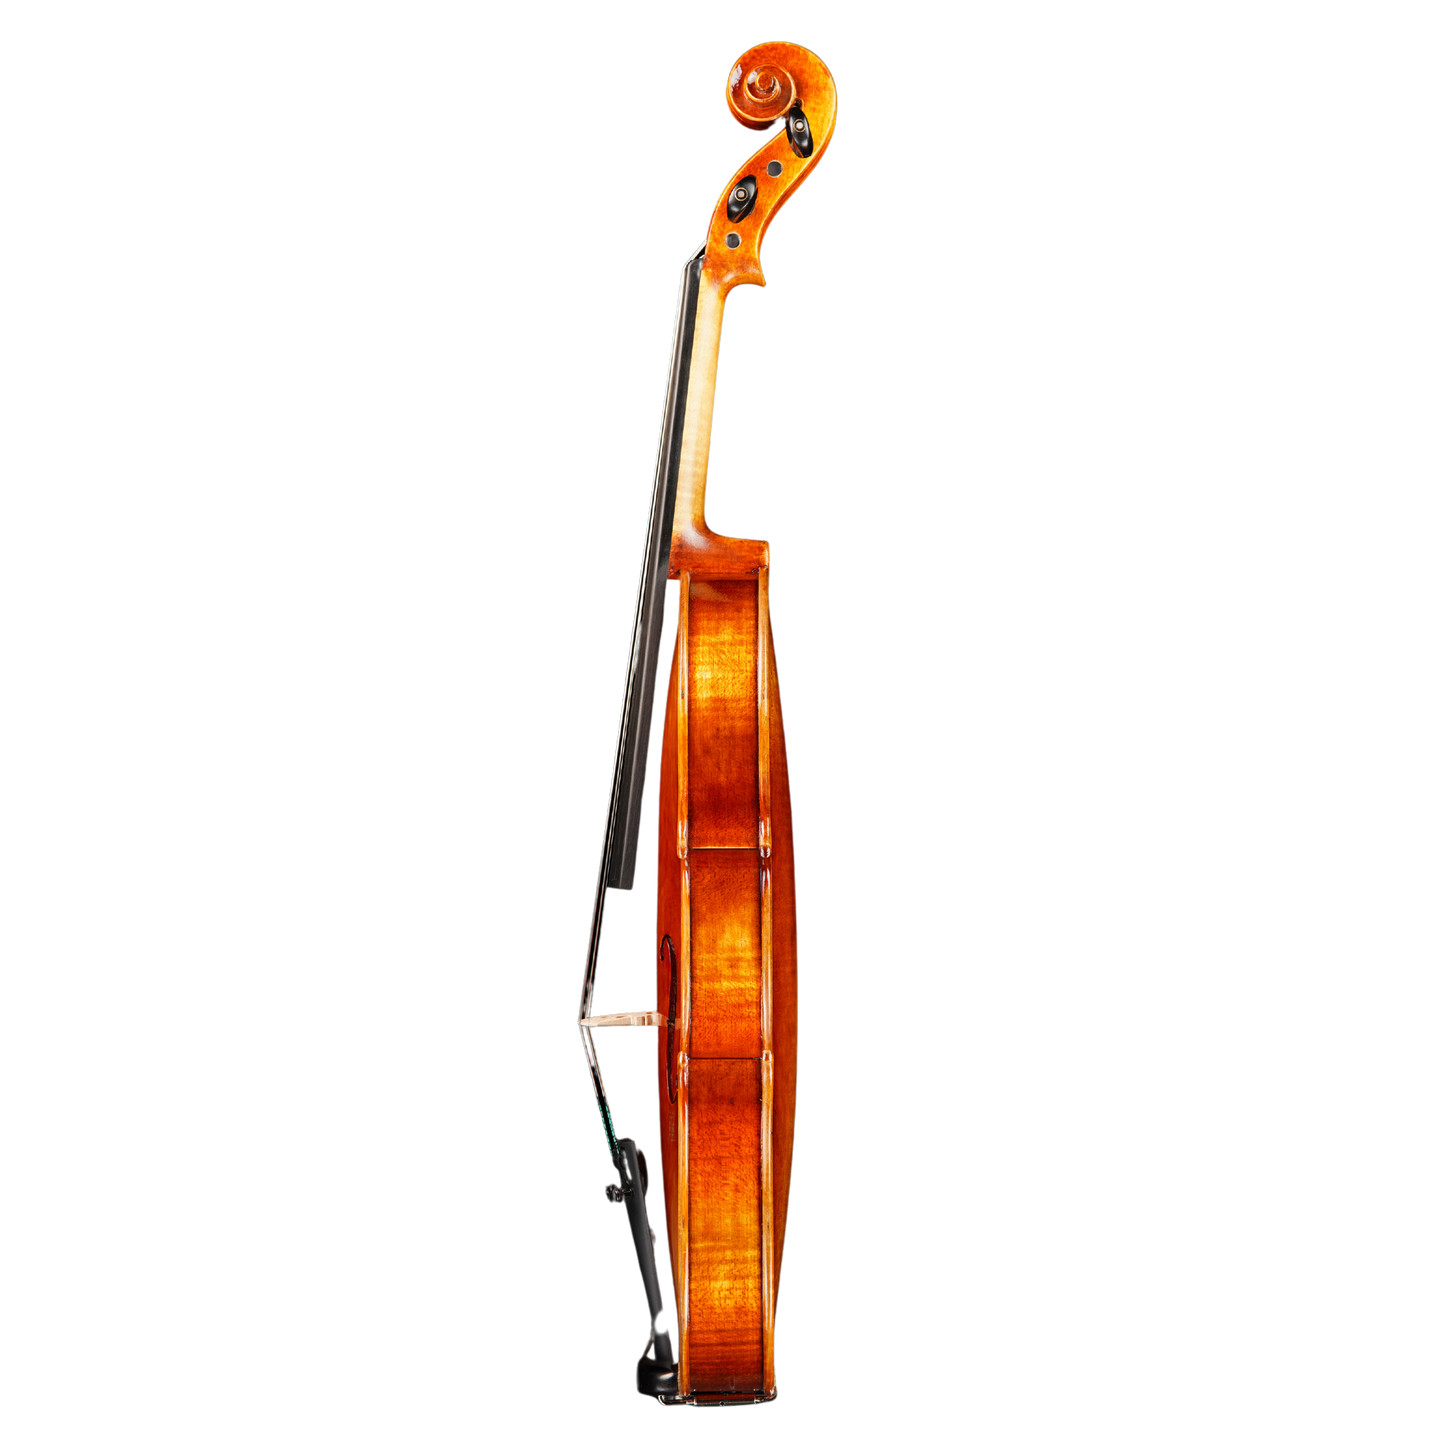 Vincenzo Bellini VB-102 Violin